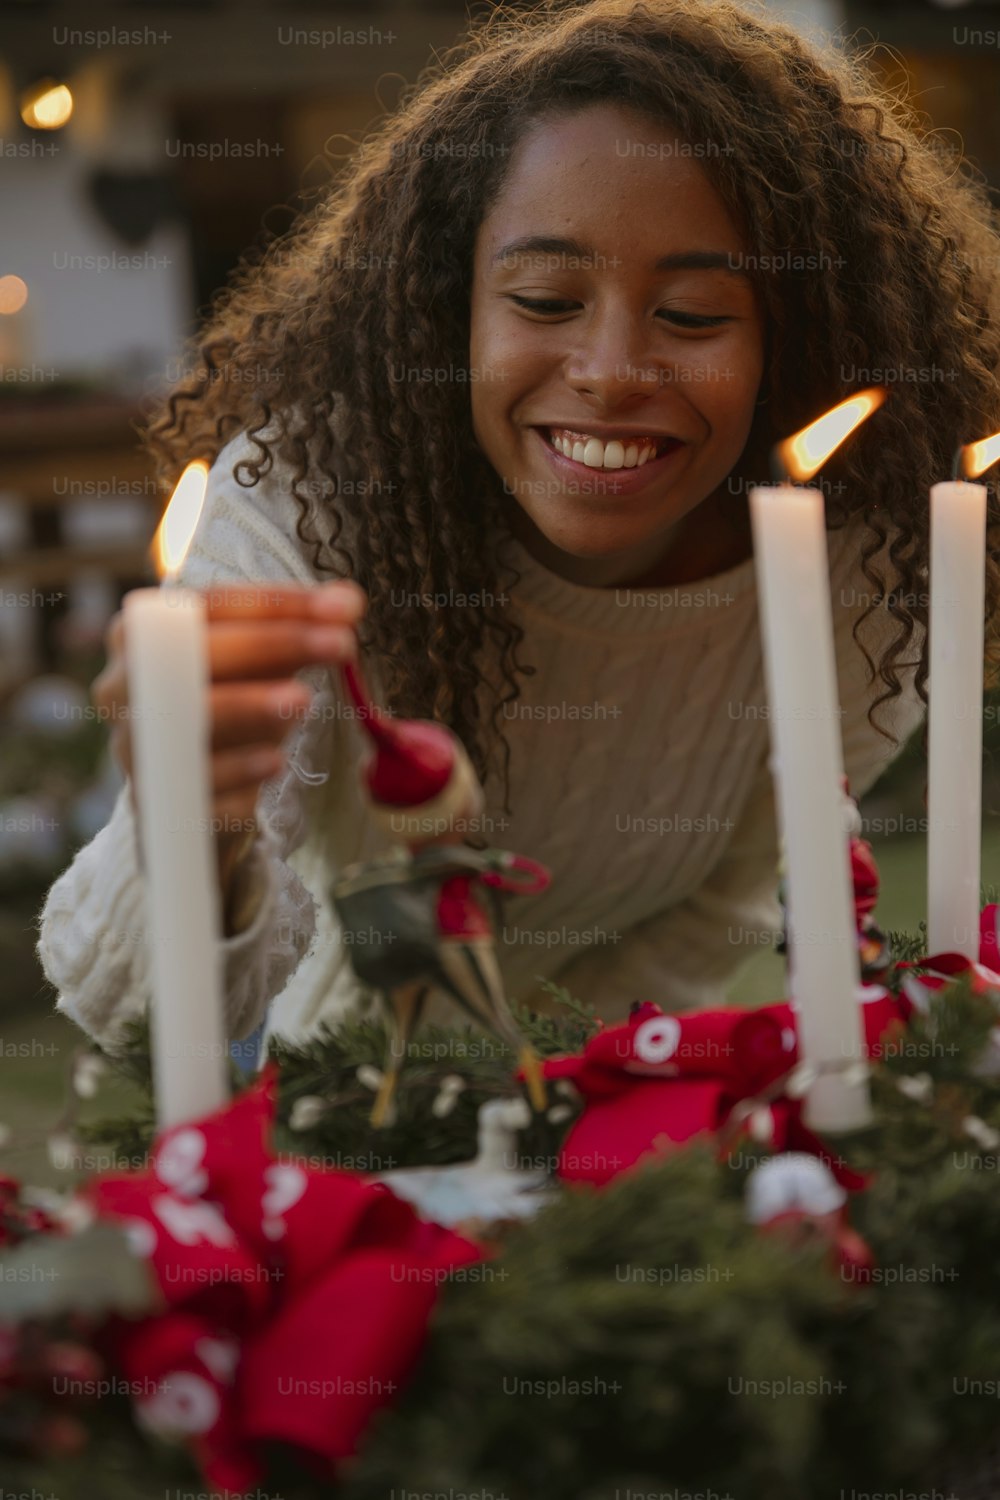 Eine Frau lächelt, während sie eine Kerze anzündet